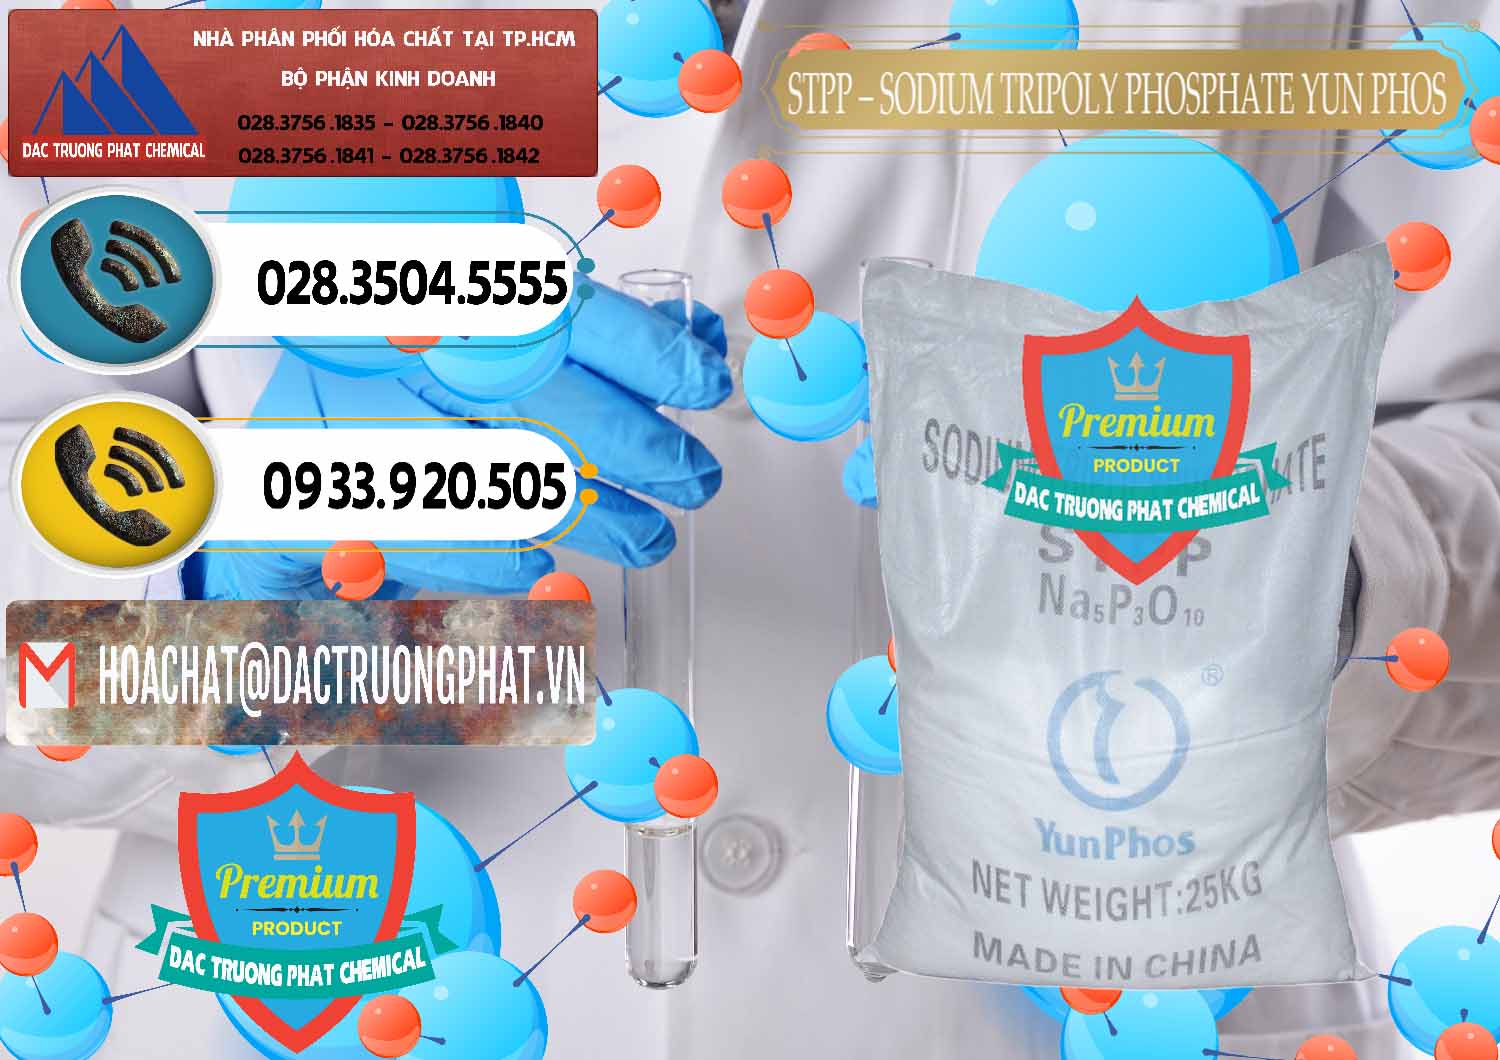 Nơi bán Sodium Tripoly Phosphate - STPP Yun Phos Trung Quốc China - 0153 - Chuyên bán & cung cấp hóa chất tại TP.HCM - hoachatdetnhuom.vn